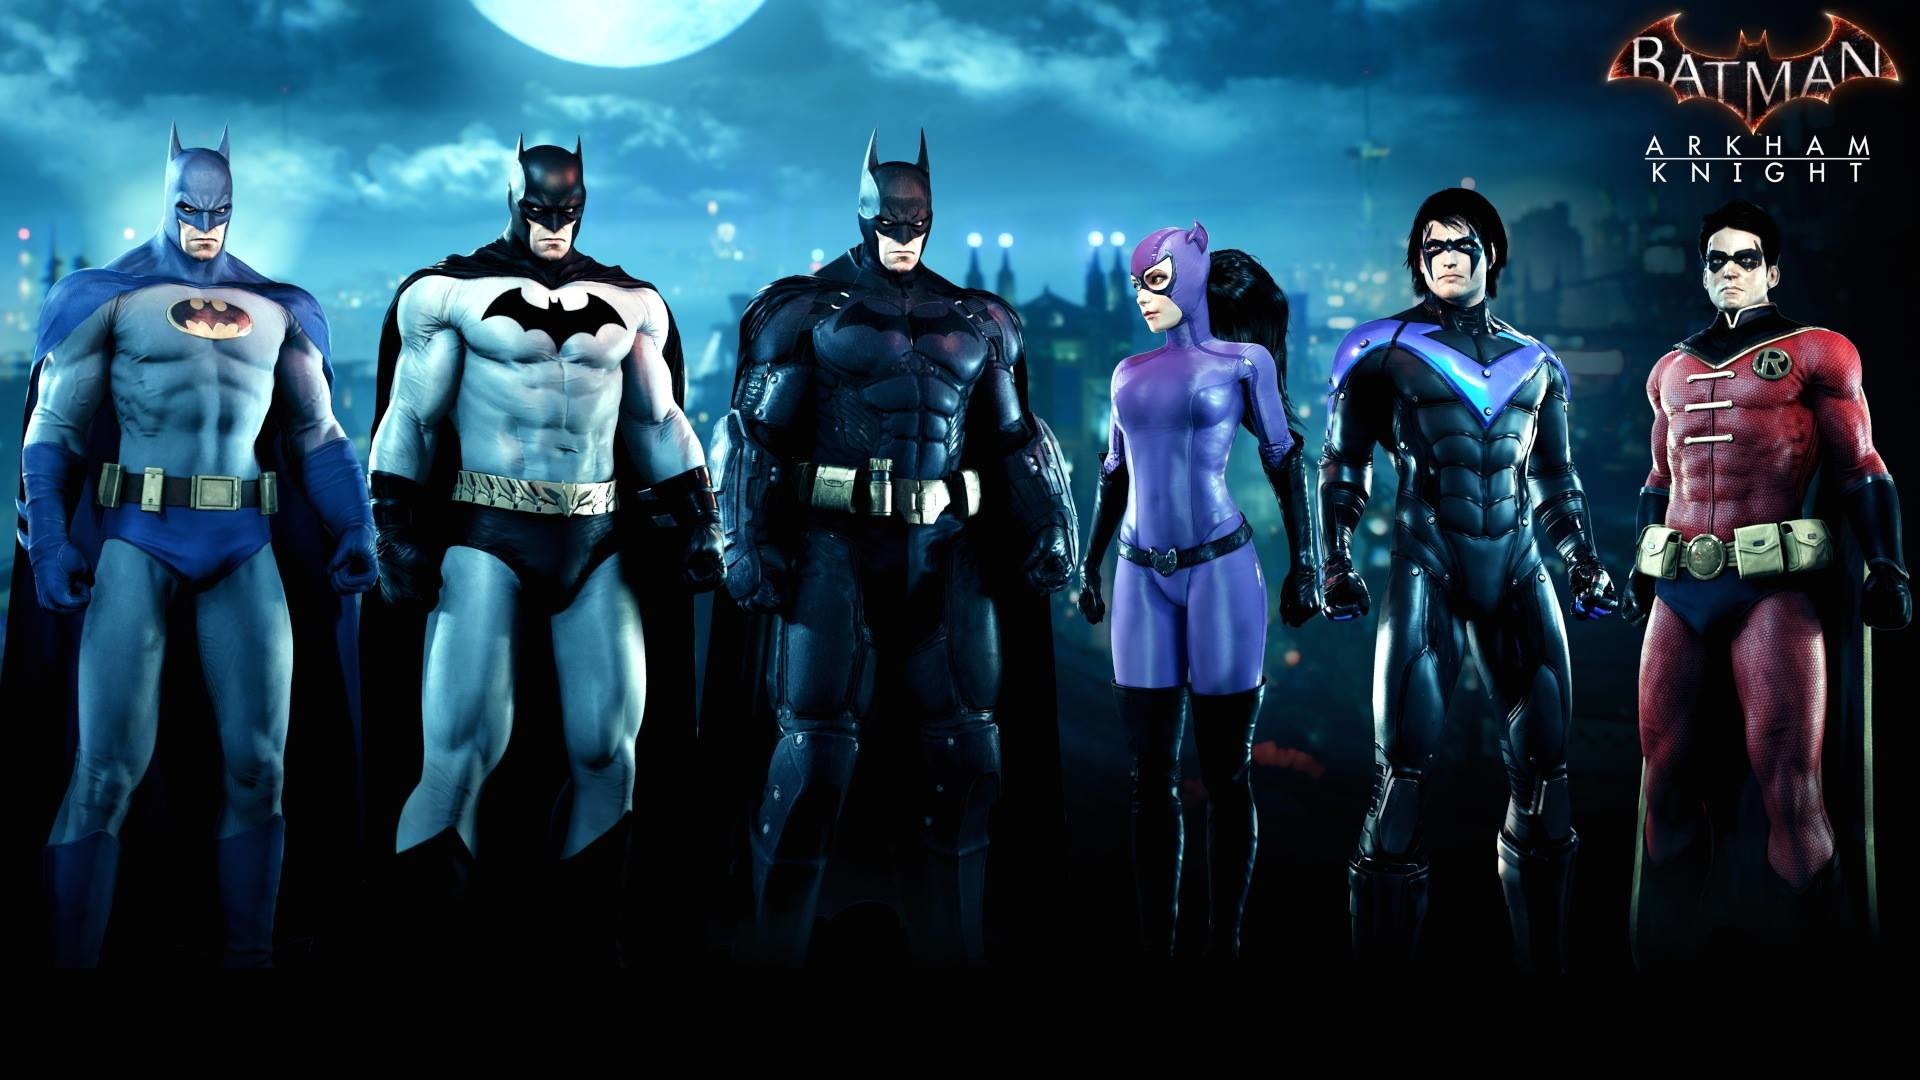 The Bat family skin pack